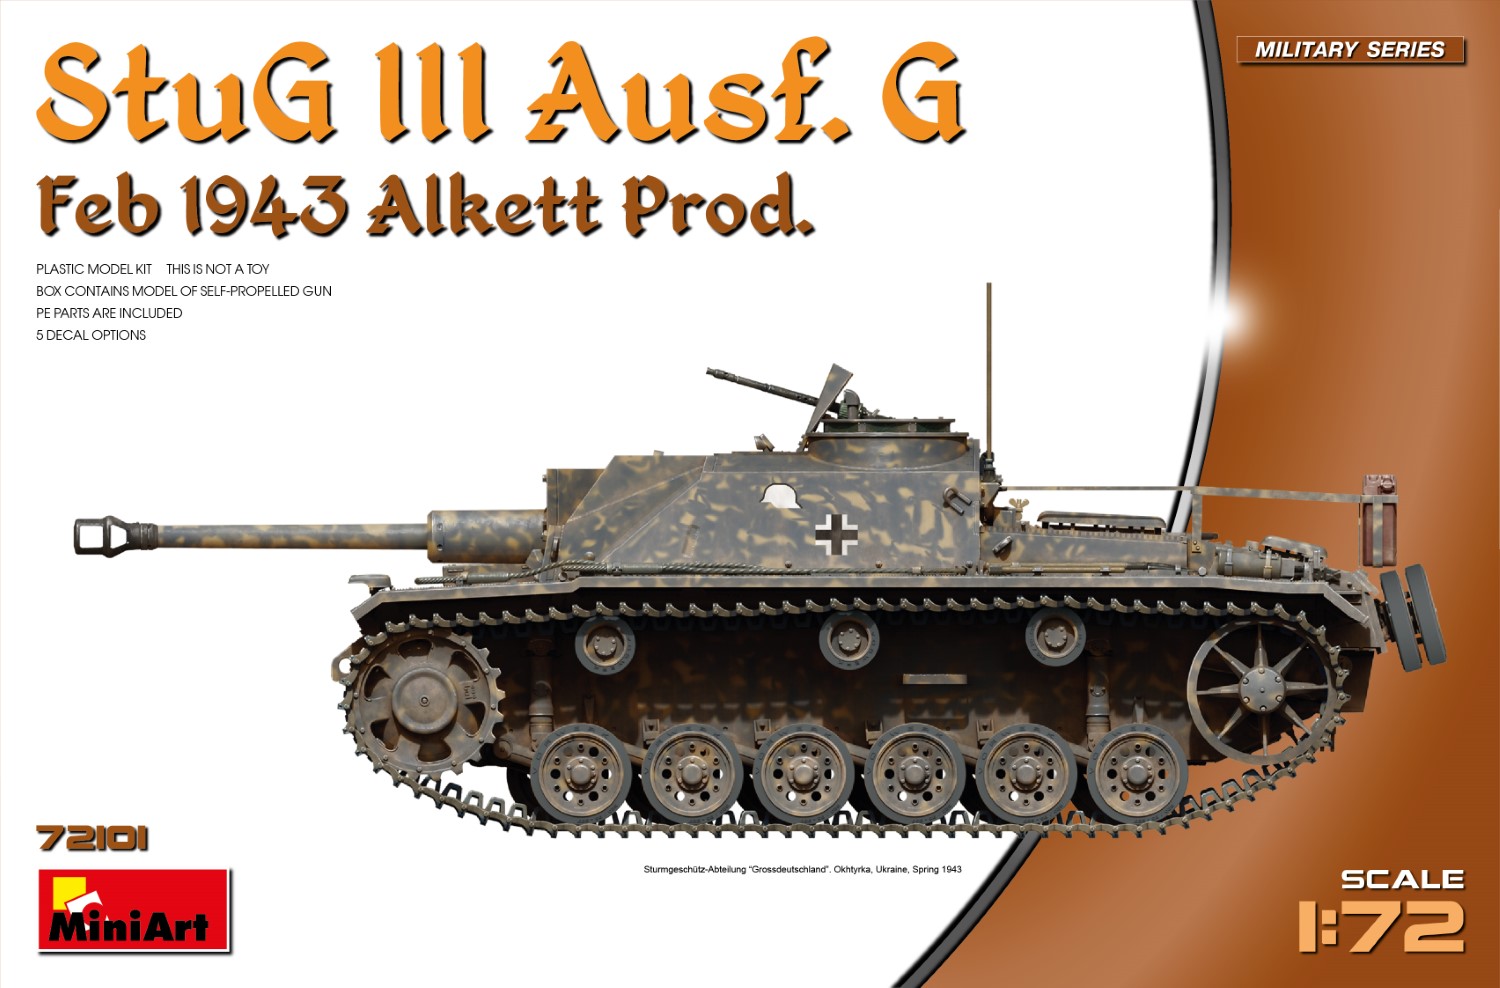 1/72 Ⅲ号突撃砲Ausf.G アルケット社製 1943年2月
